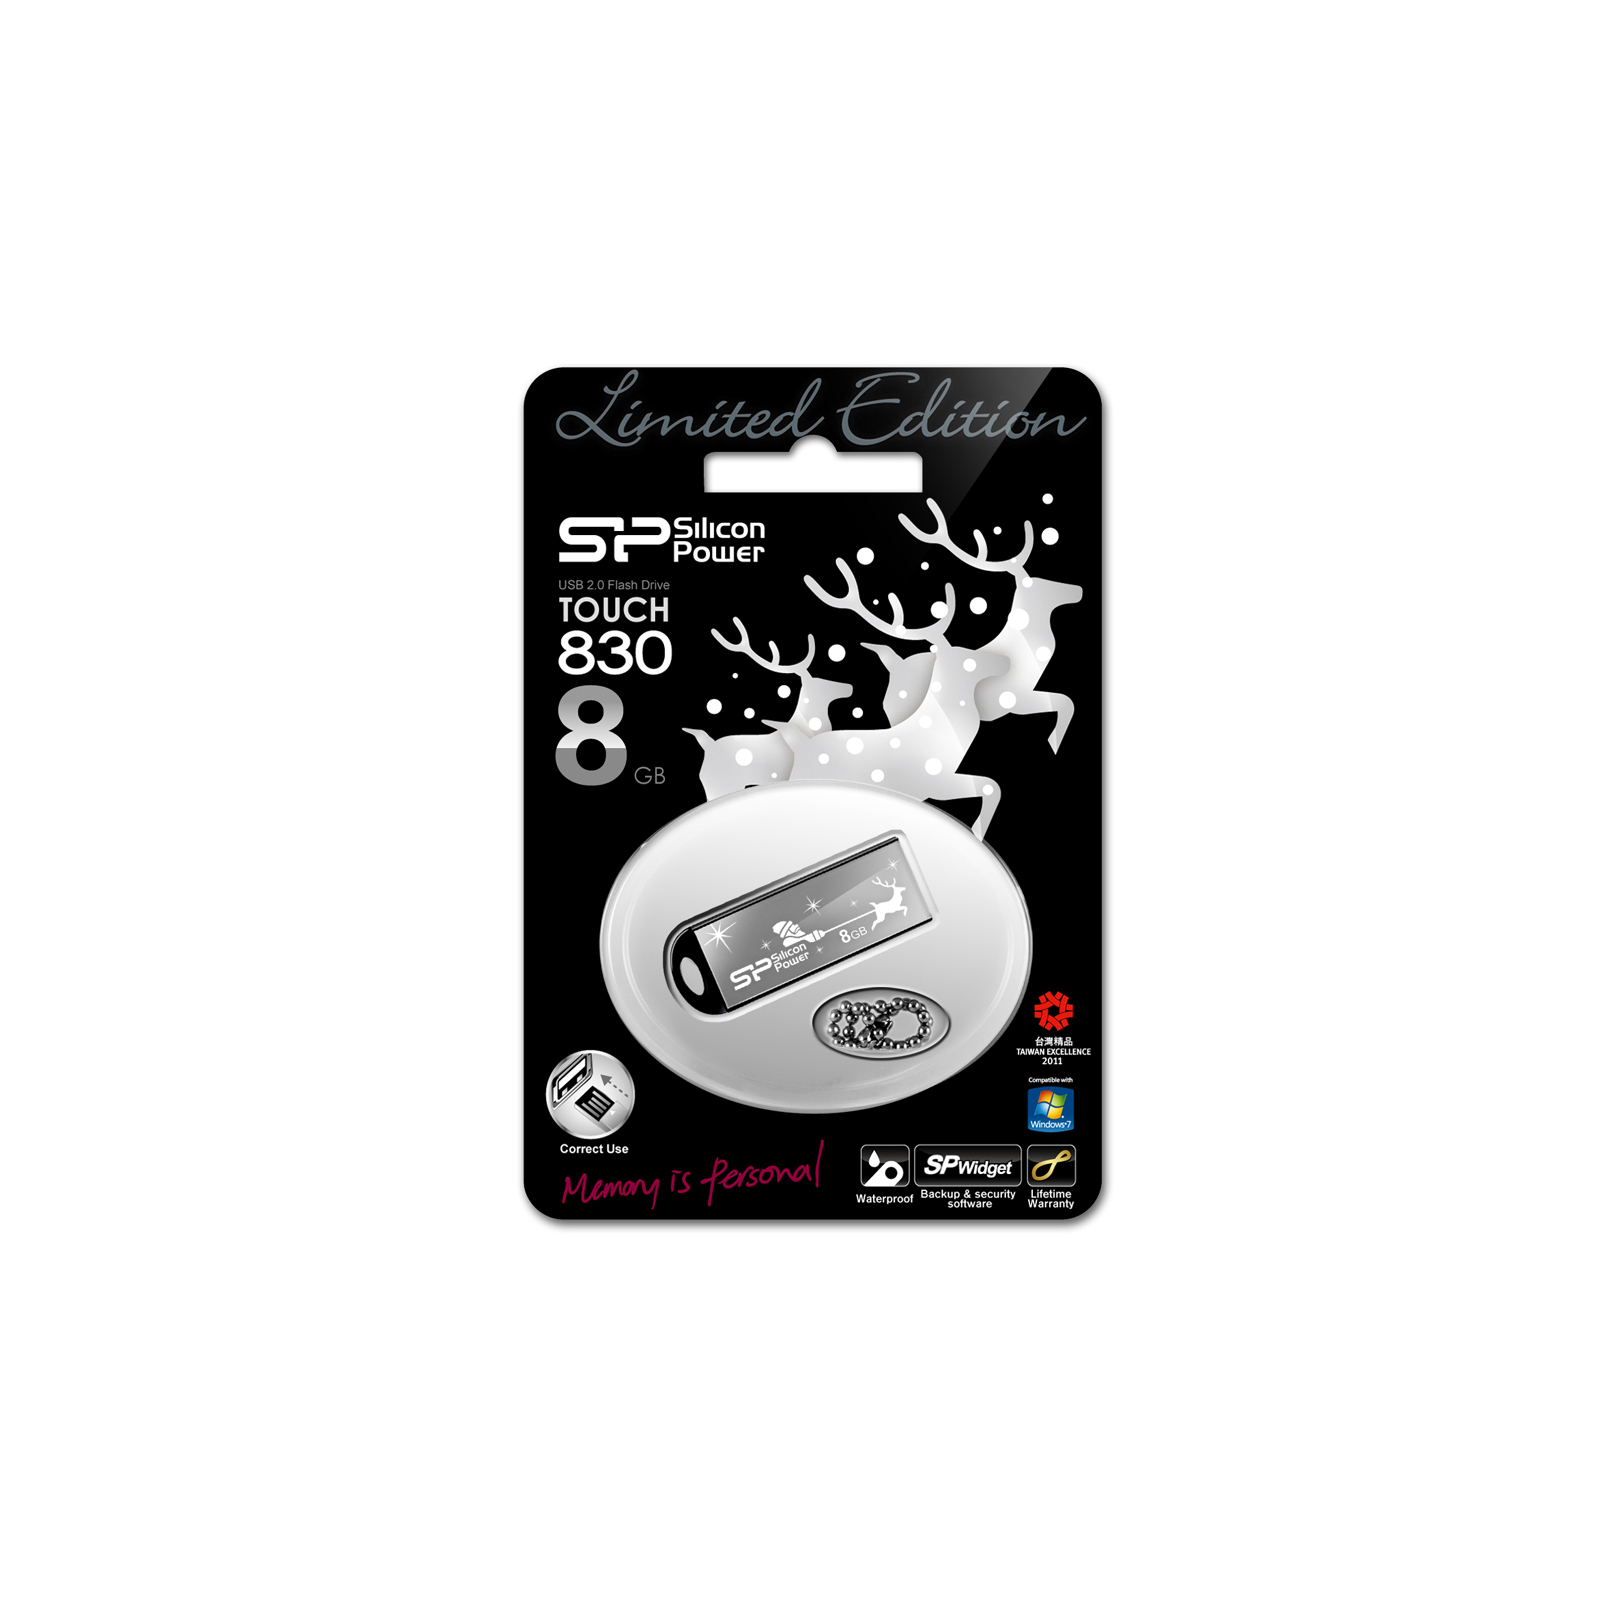 USB флеш накопитель Silicon Power 8Gb Touch 830 black santa edition (SP008GBUF2830V1K-LE) изображение 3